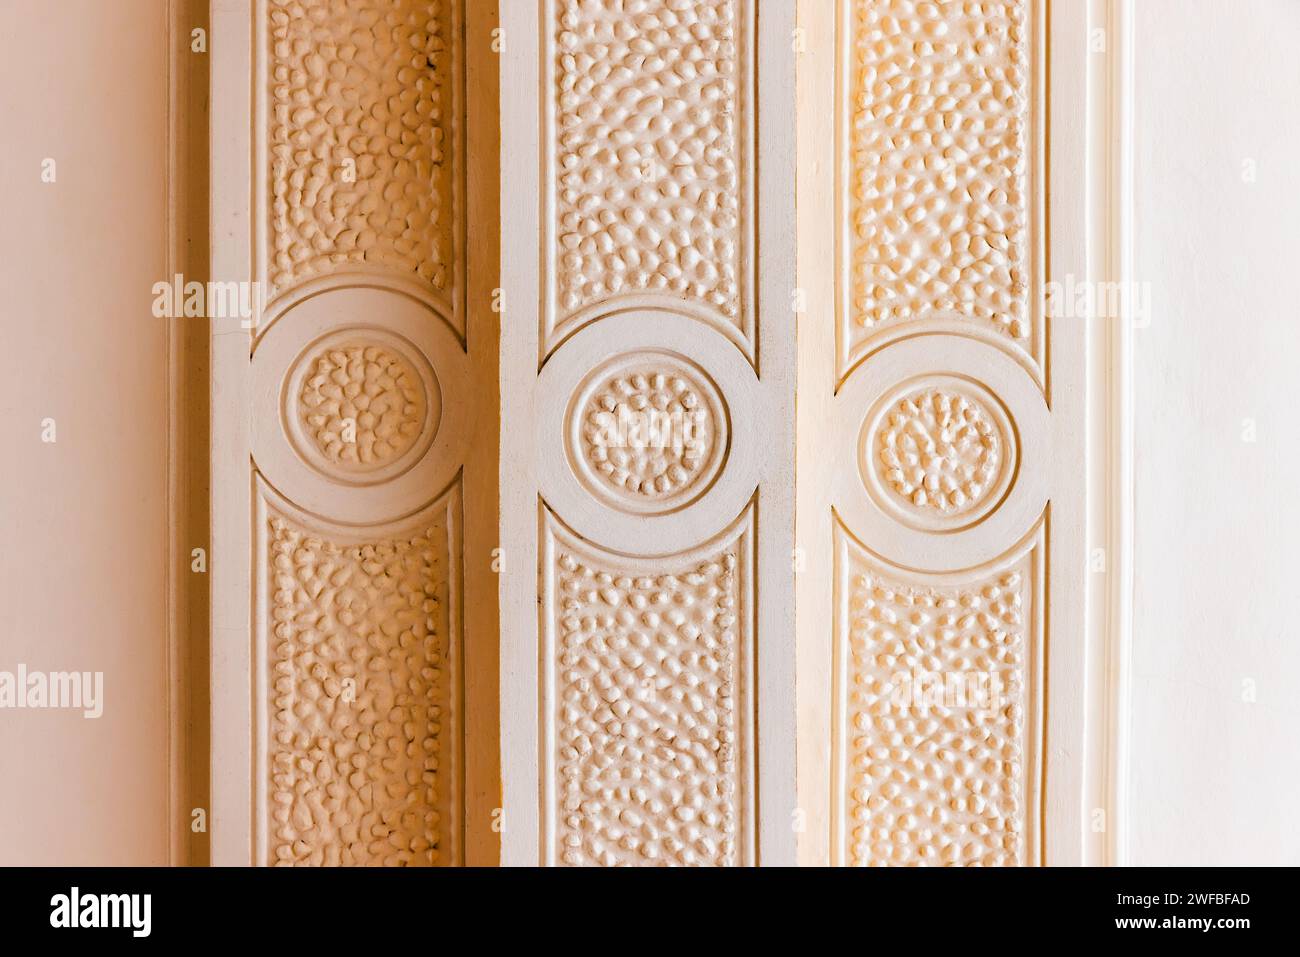 Dettagli architettonici classici, elementi geometrici a bassorilievo della decorazione del soffitto Foto Stock